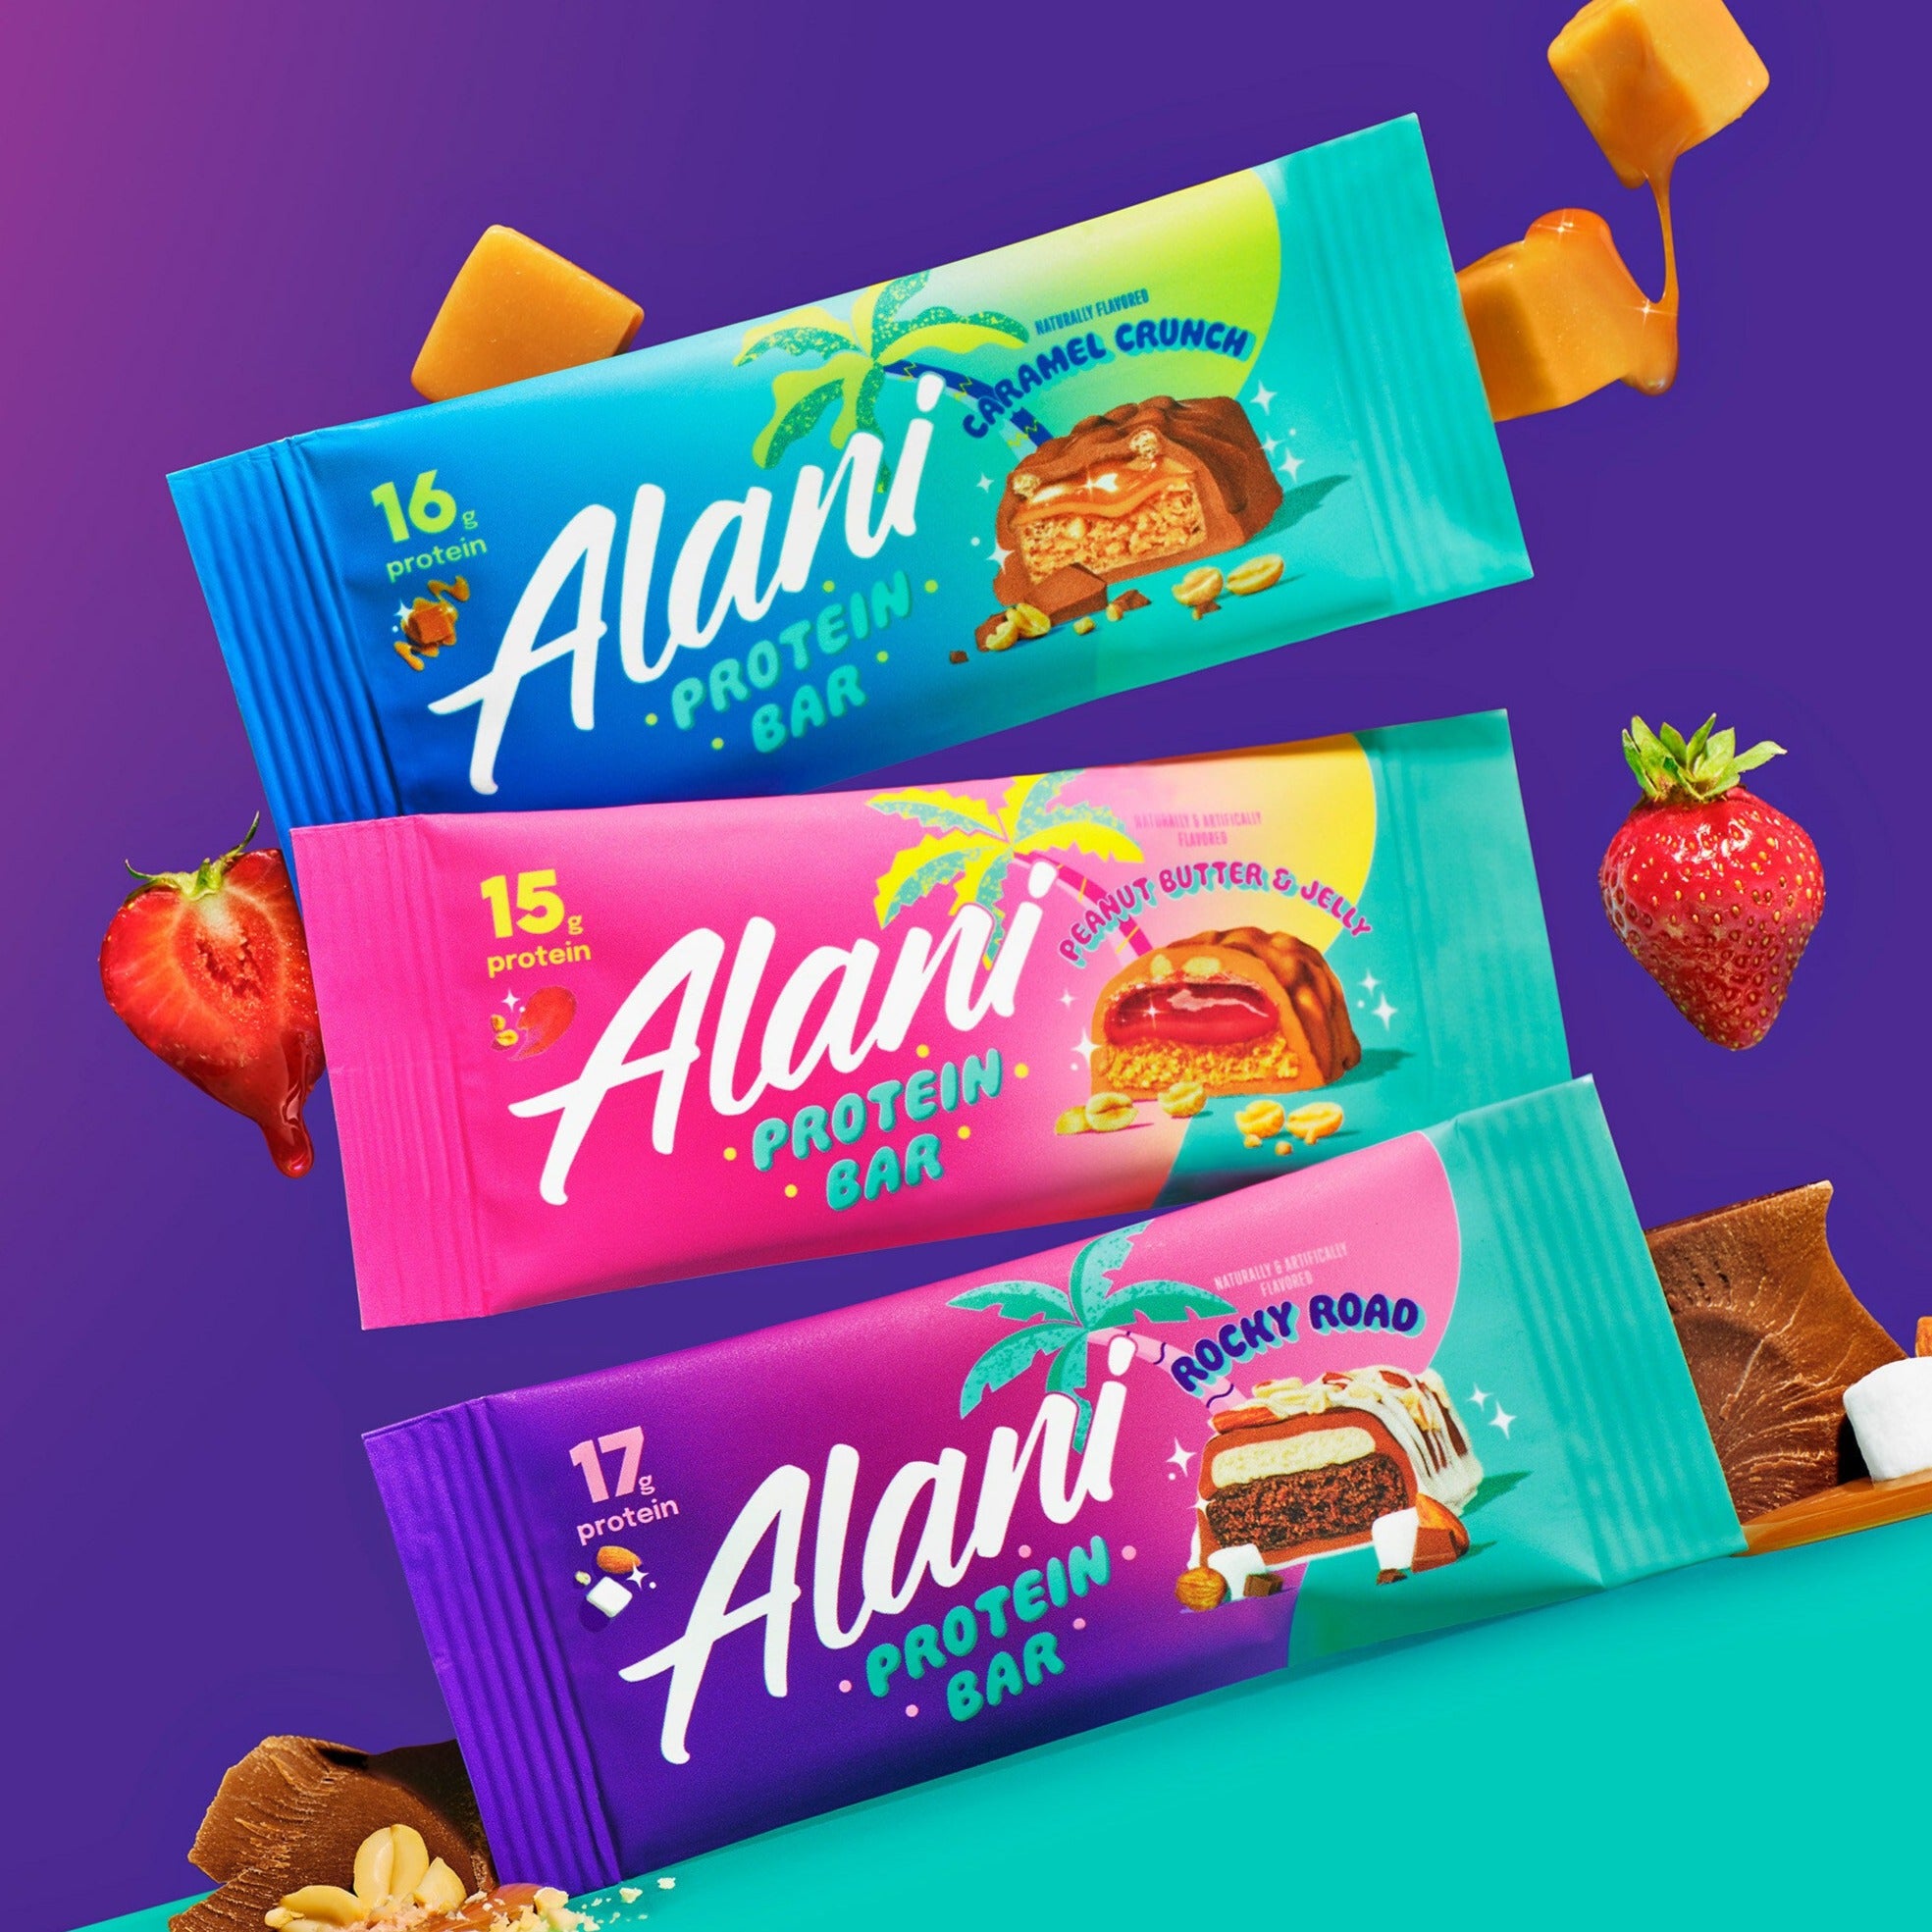 Alani Protein Bar (1 Bar)